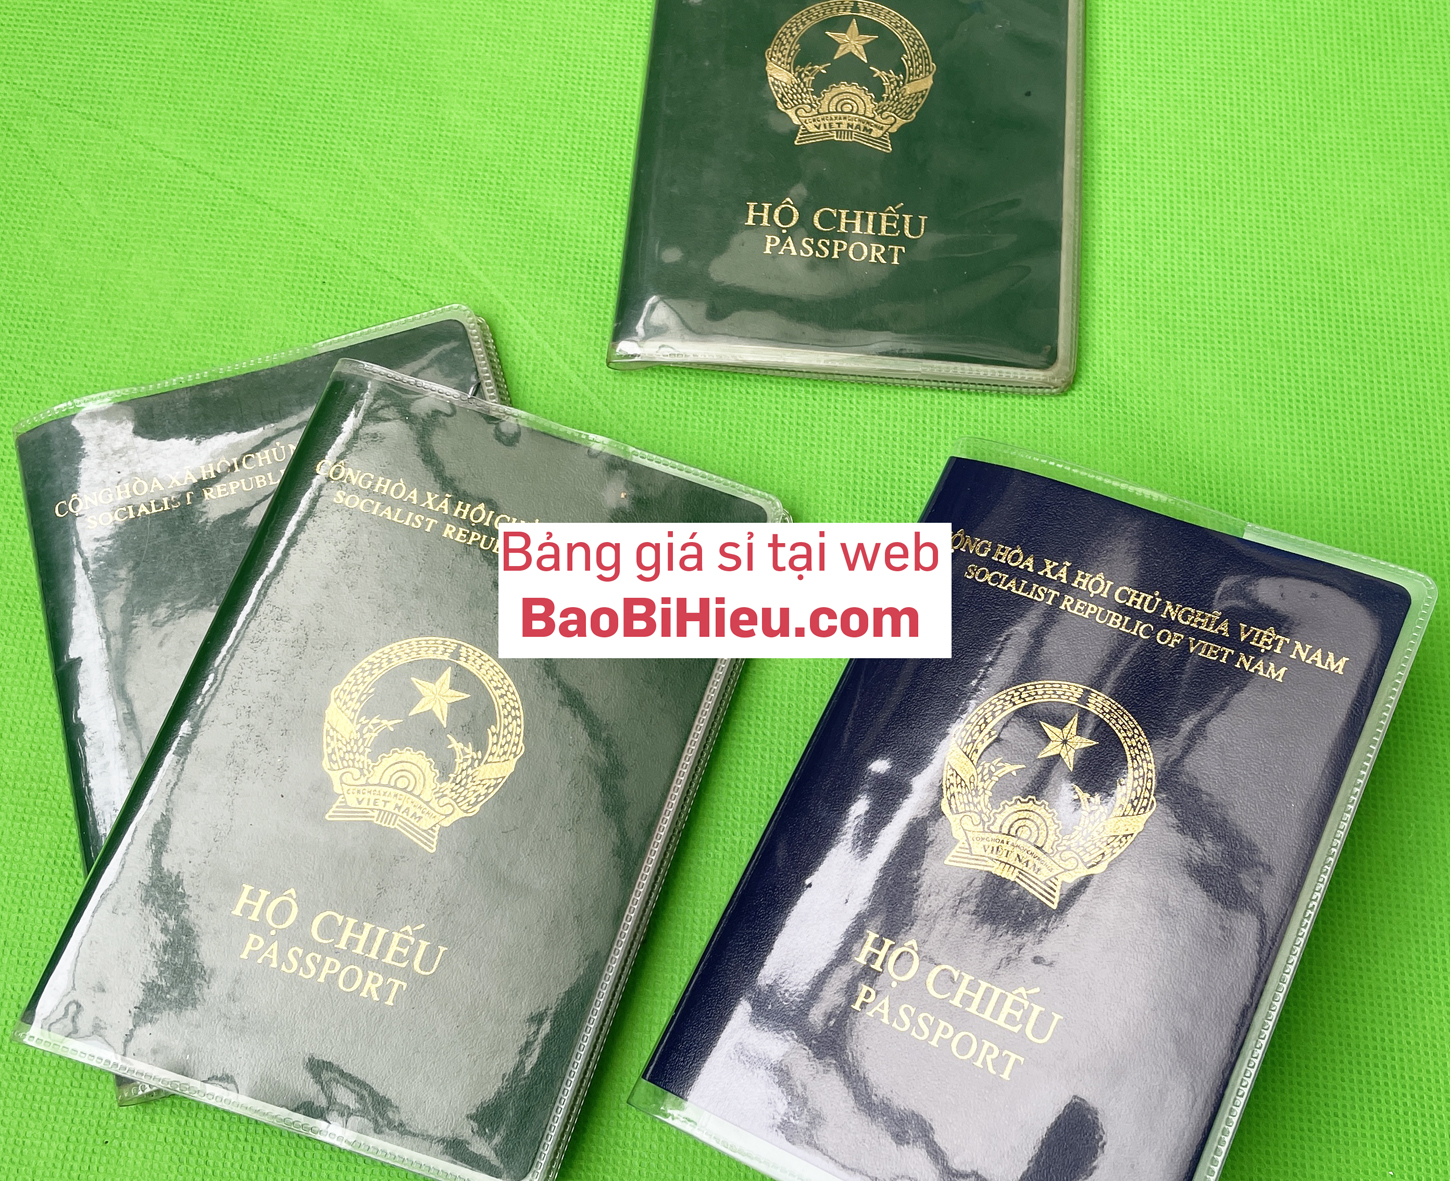 Vỏ bao hộ chiếu (passport) dẻo trong có khe đựng vé máy bay và các thoại thẻ hiệu bamarau B132